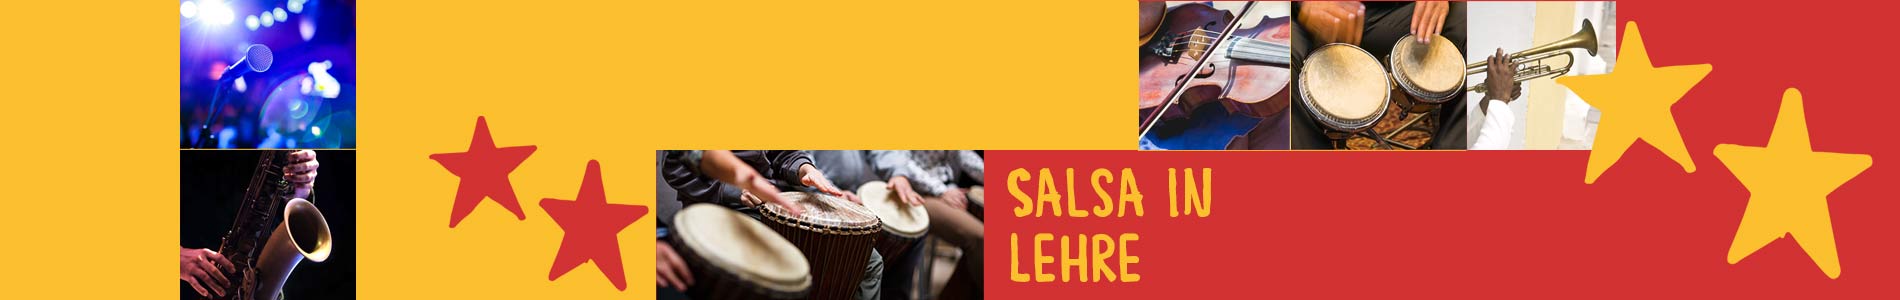 Salsa in Lehre – Salsa lernen und tanzen, Tanzkurse, Partys, Veranstaltungen